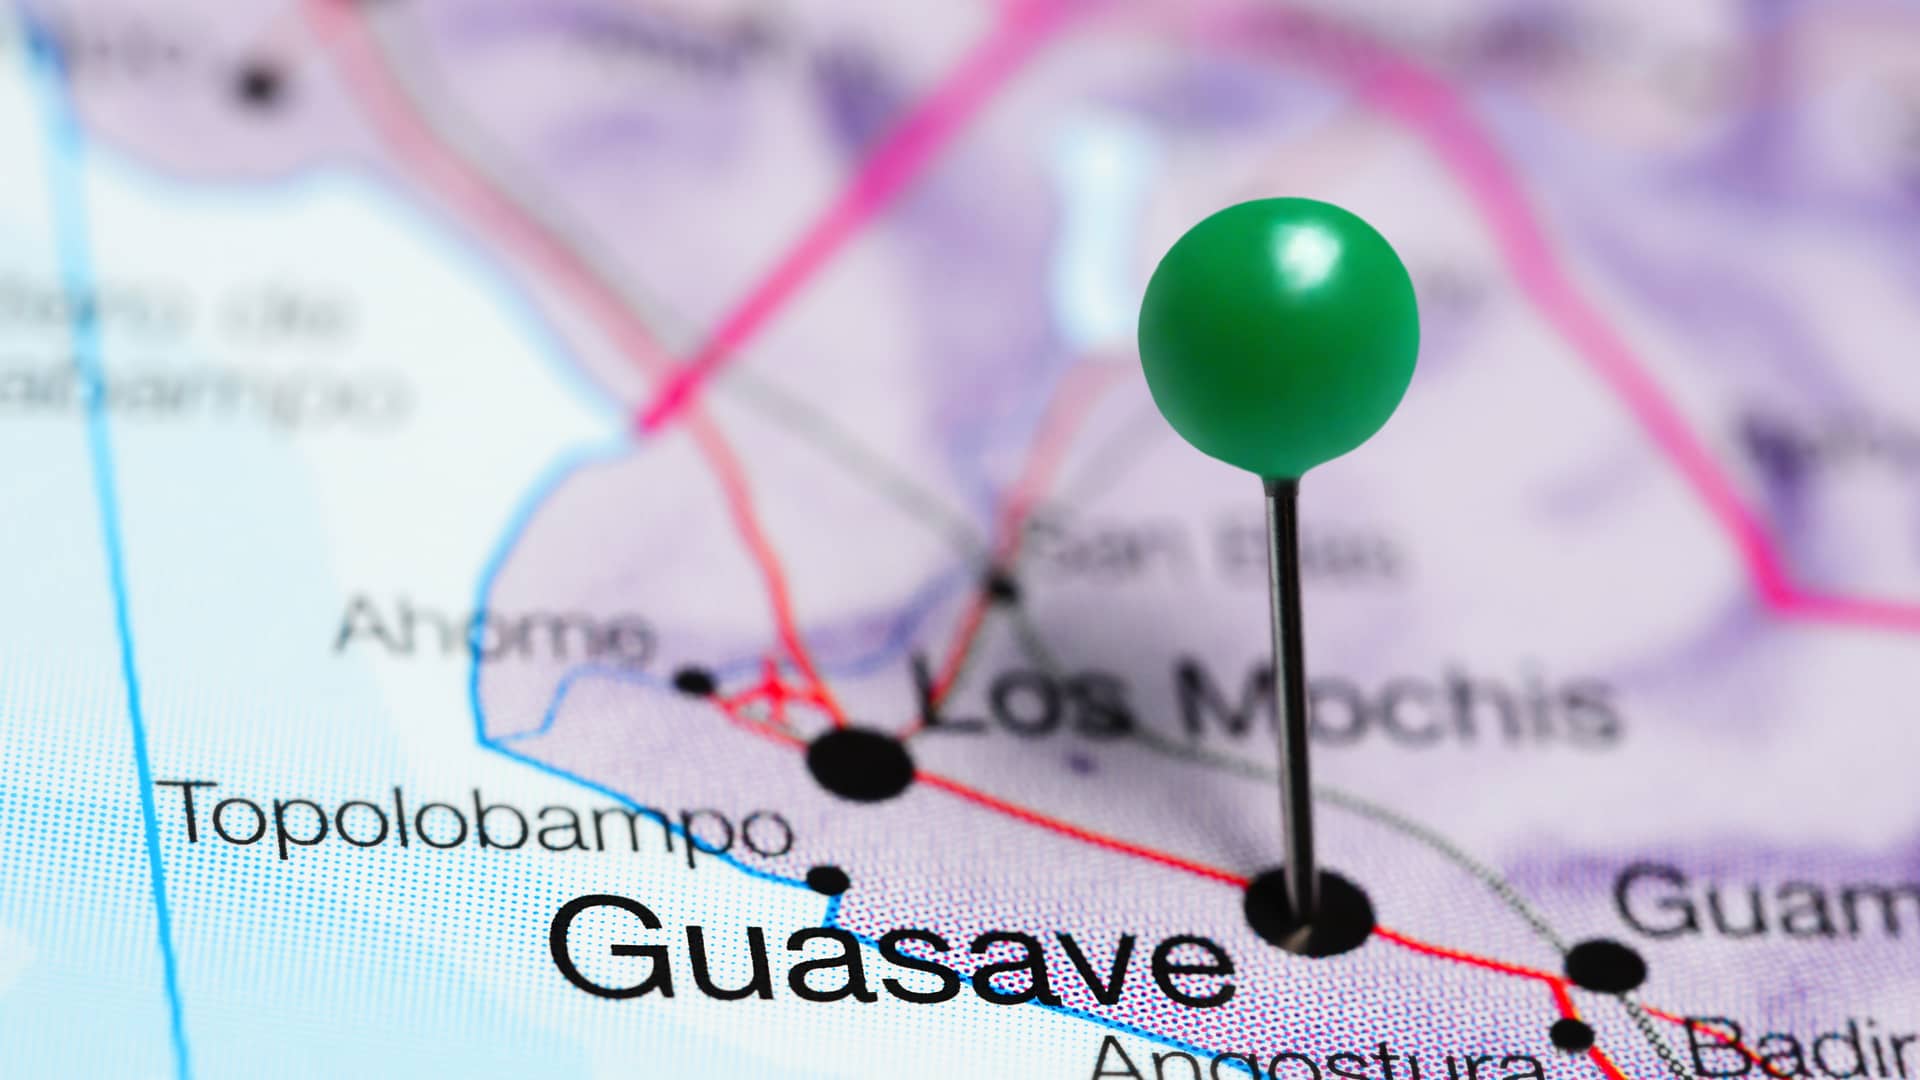 ciudad mexicana de guasave localizada en el mapa para represnetar las sucursales dem megacable